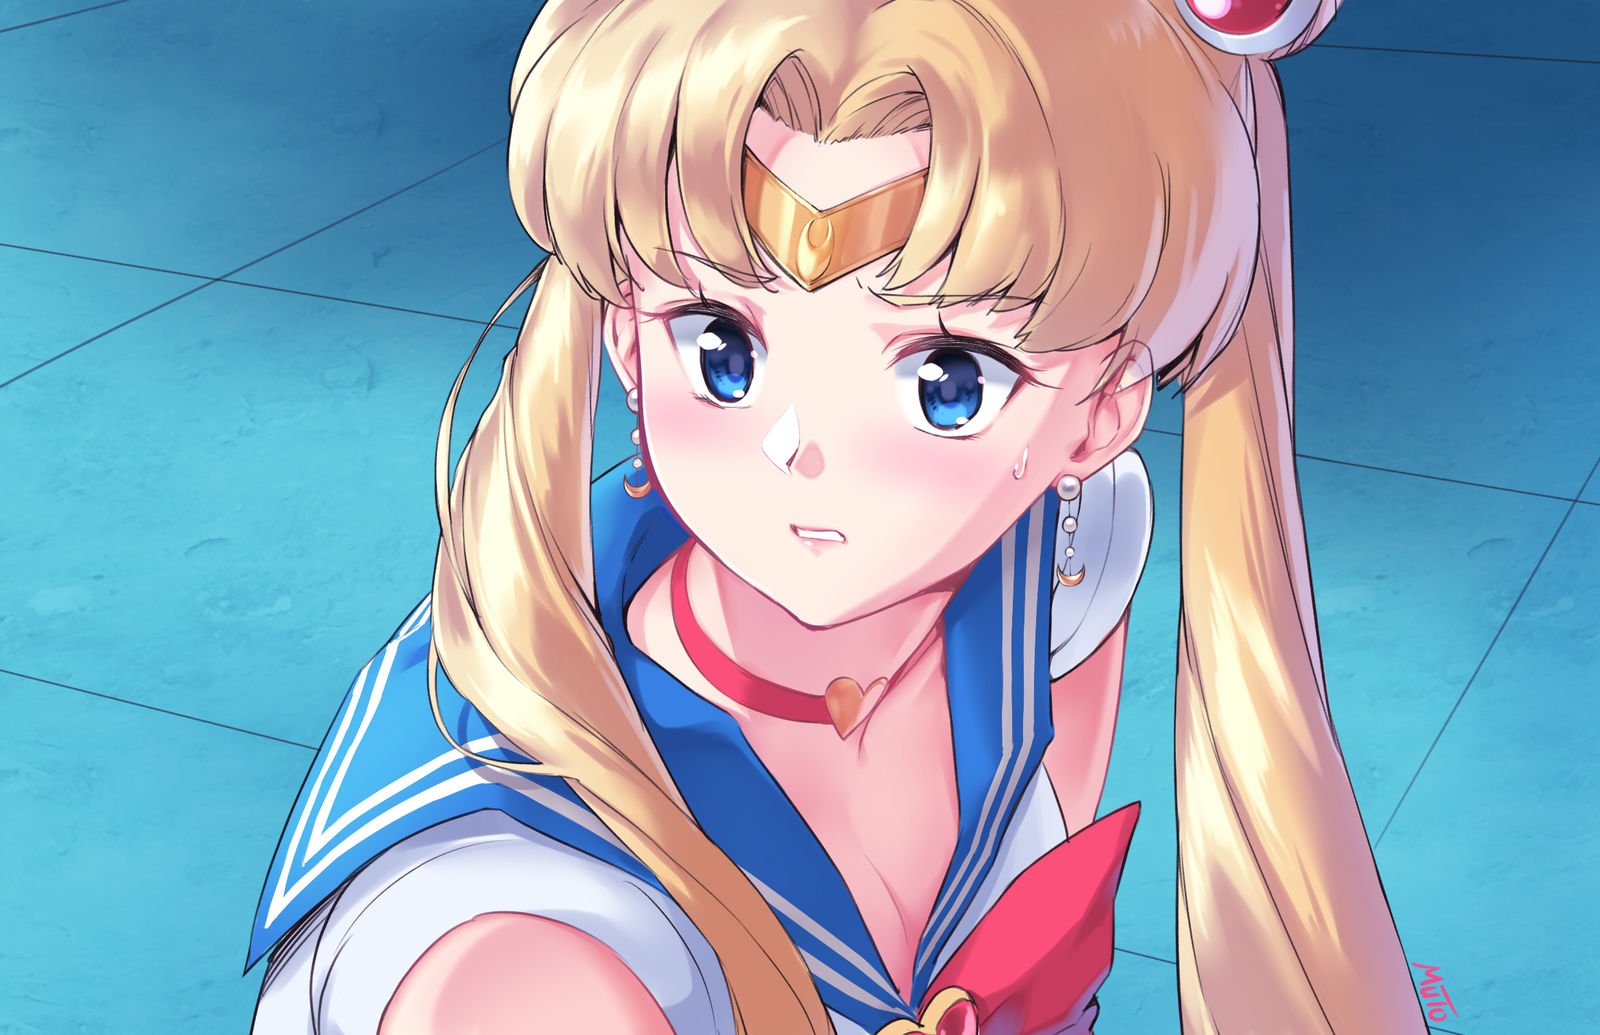 Sailor moon Redraw challenge插画图片壁纸